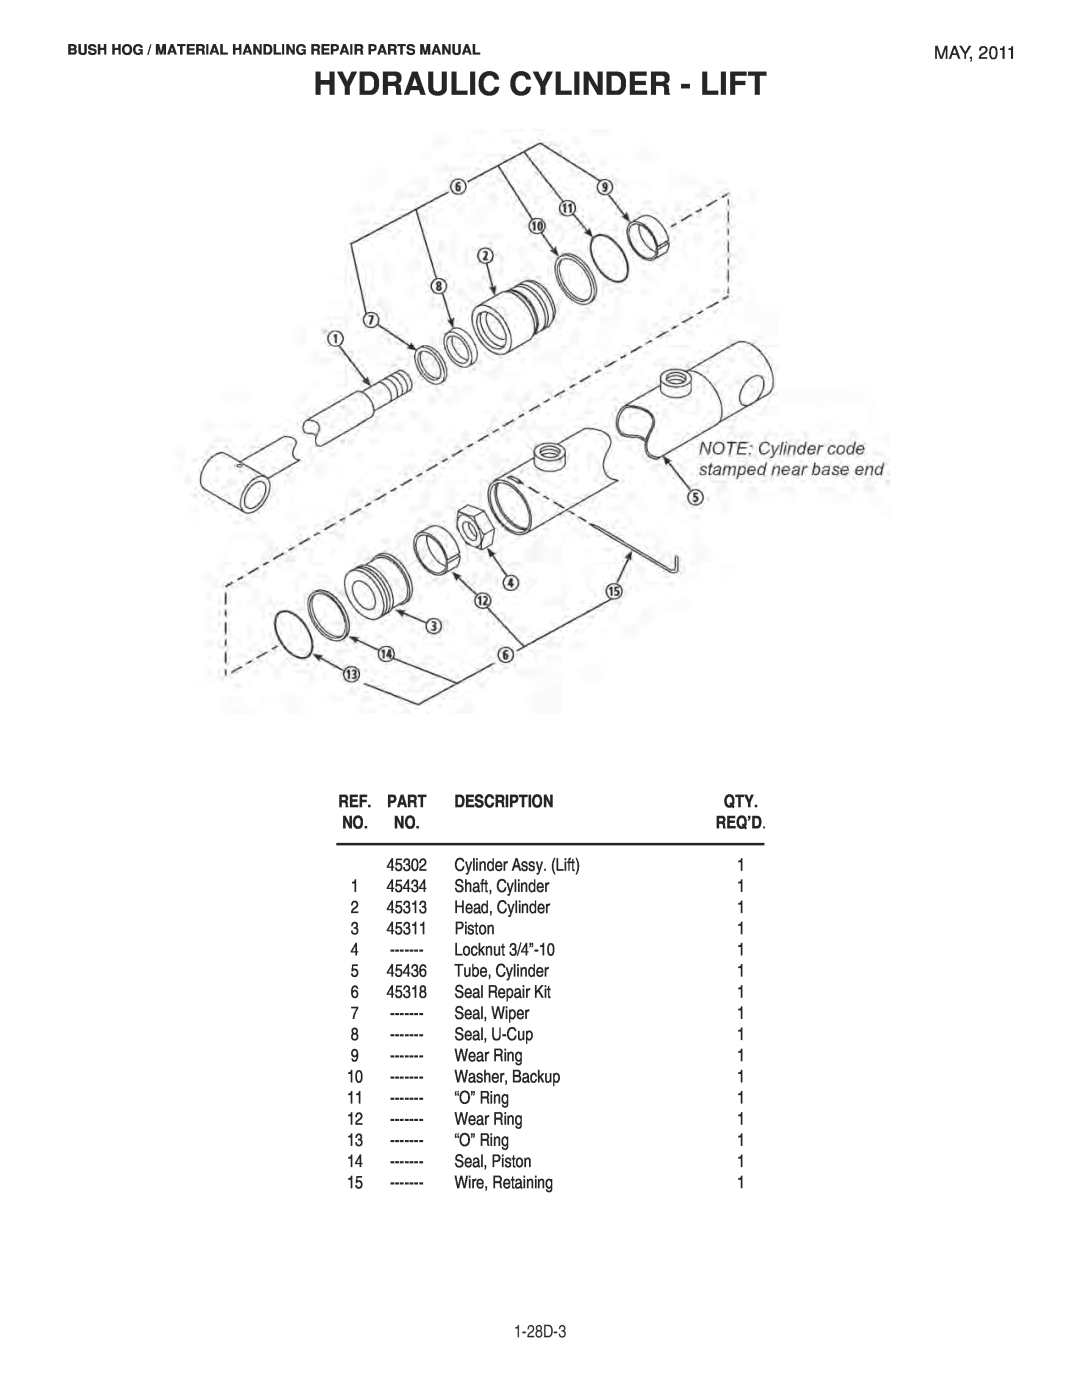 Bush Hog 1747 manual Hydraulic Cylinder - Lift, Description 